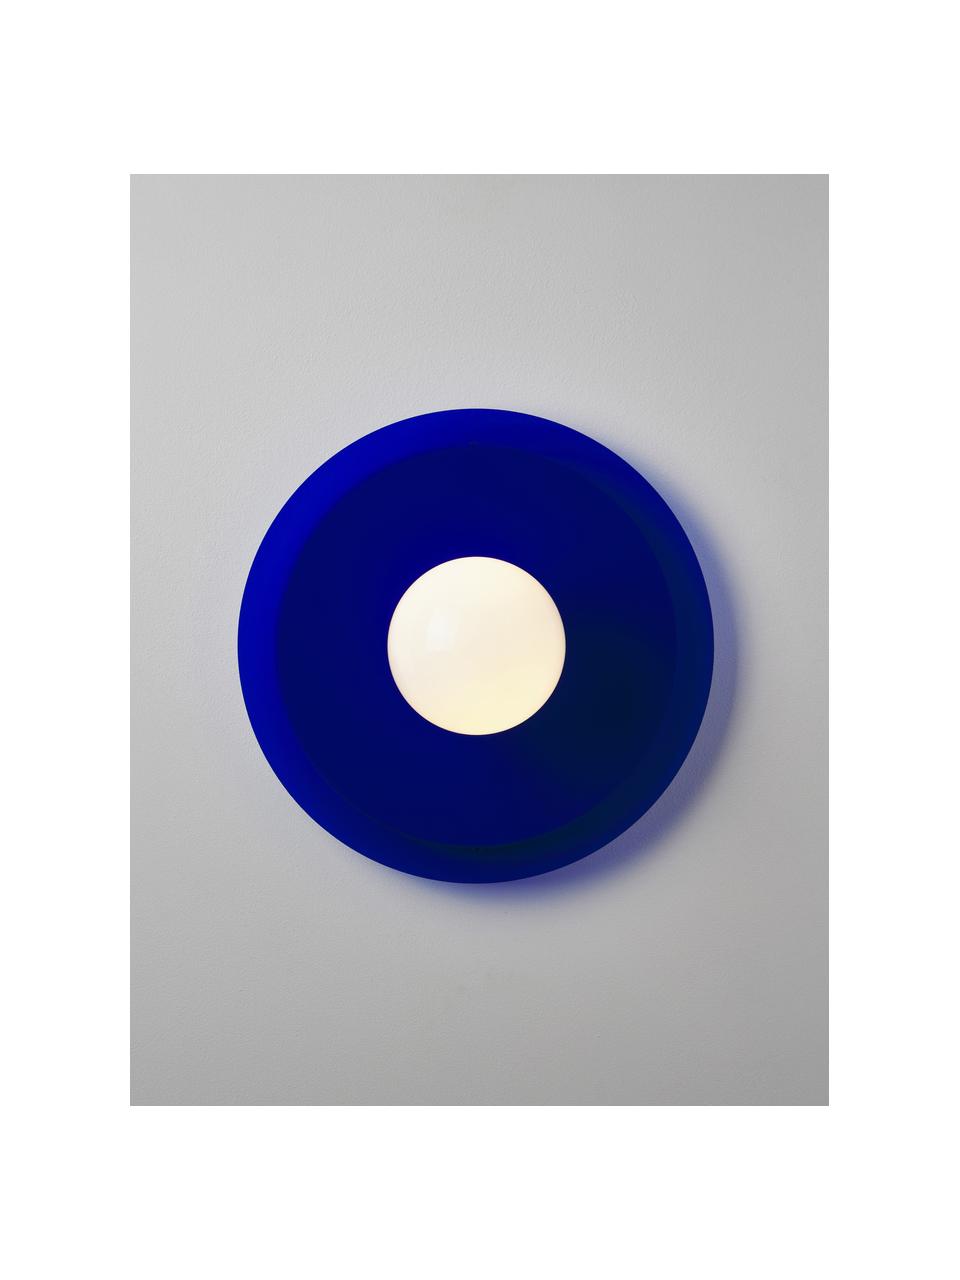 Kinkiet/lampa sufitowa Starling, Niebieski, biały, Ø 33 x G 14 cm